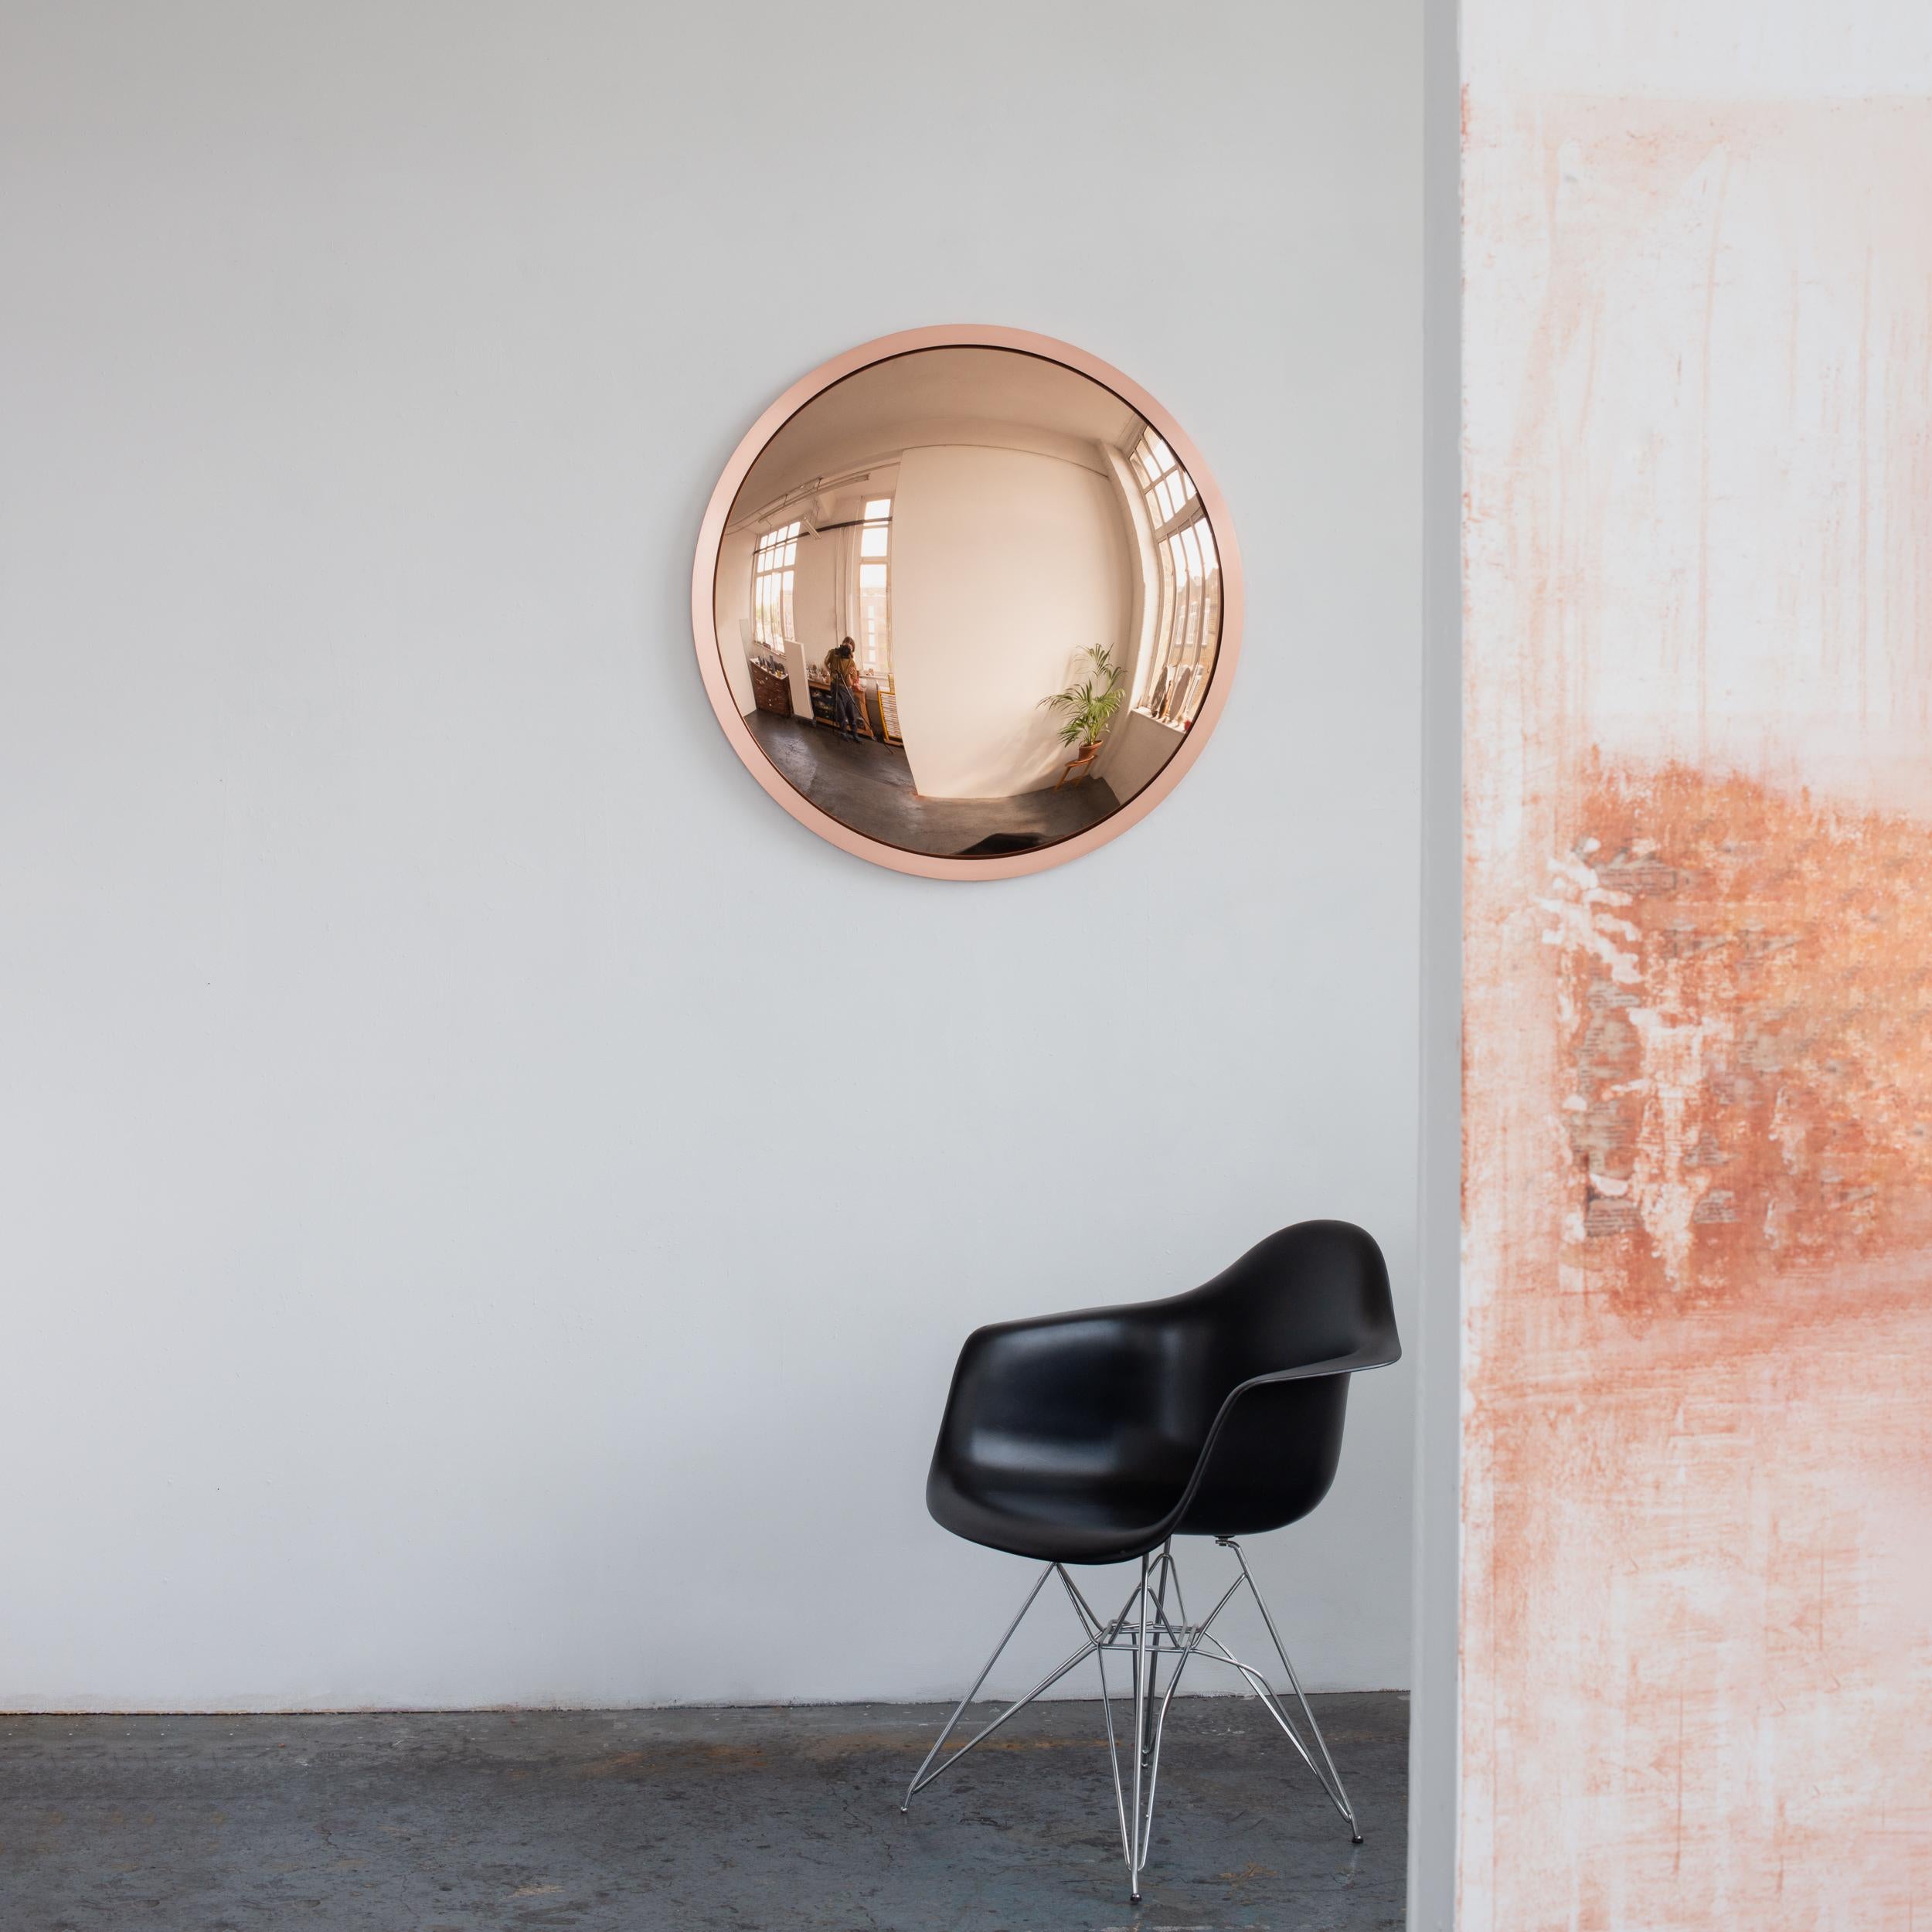 Superbe miroir convexe teinté d'or rose avec un cadre en cuivre brossé.

Chaque miroir convexe Orbis™ est conçu et fabriqué à la main à Londres, au Royaume-Uni. De légères variations de taille et des imperfections sur les bords et les finitions de